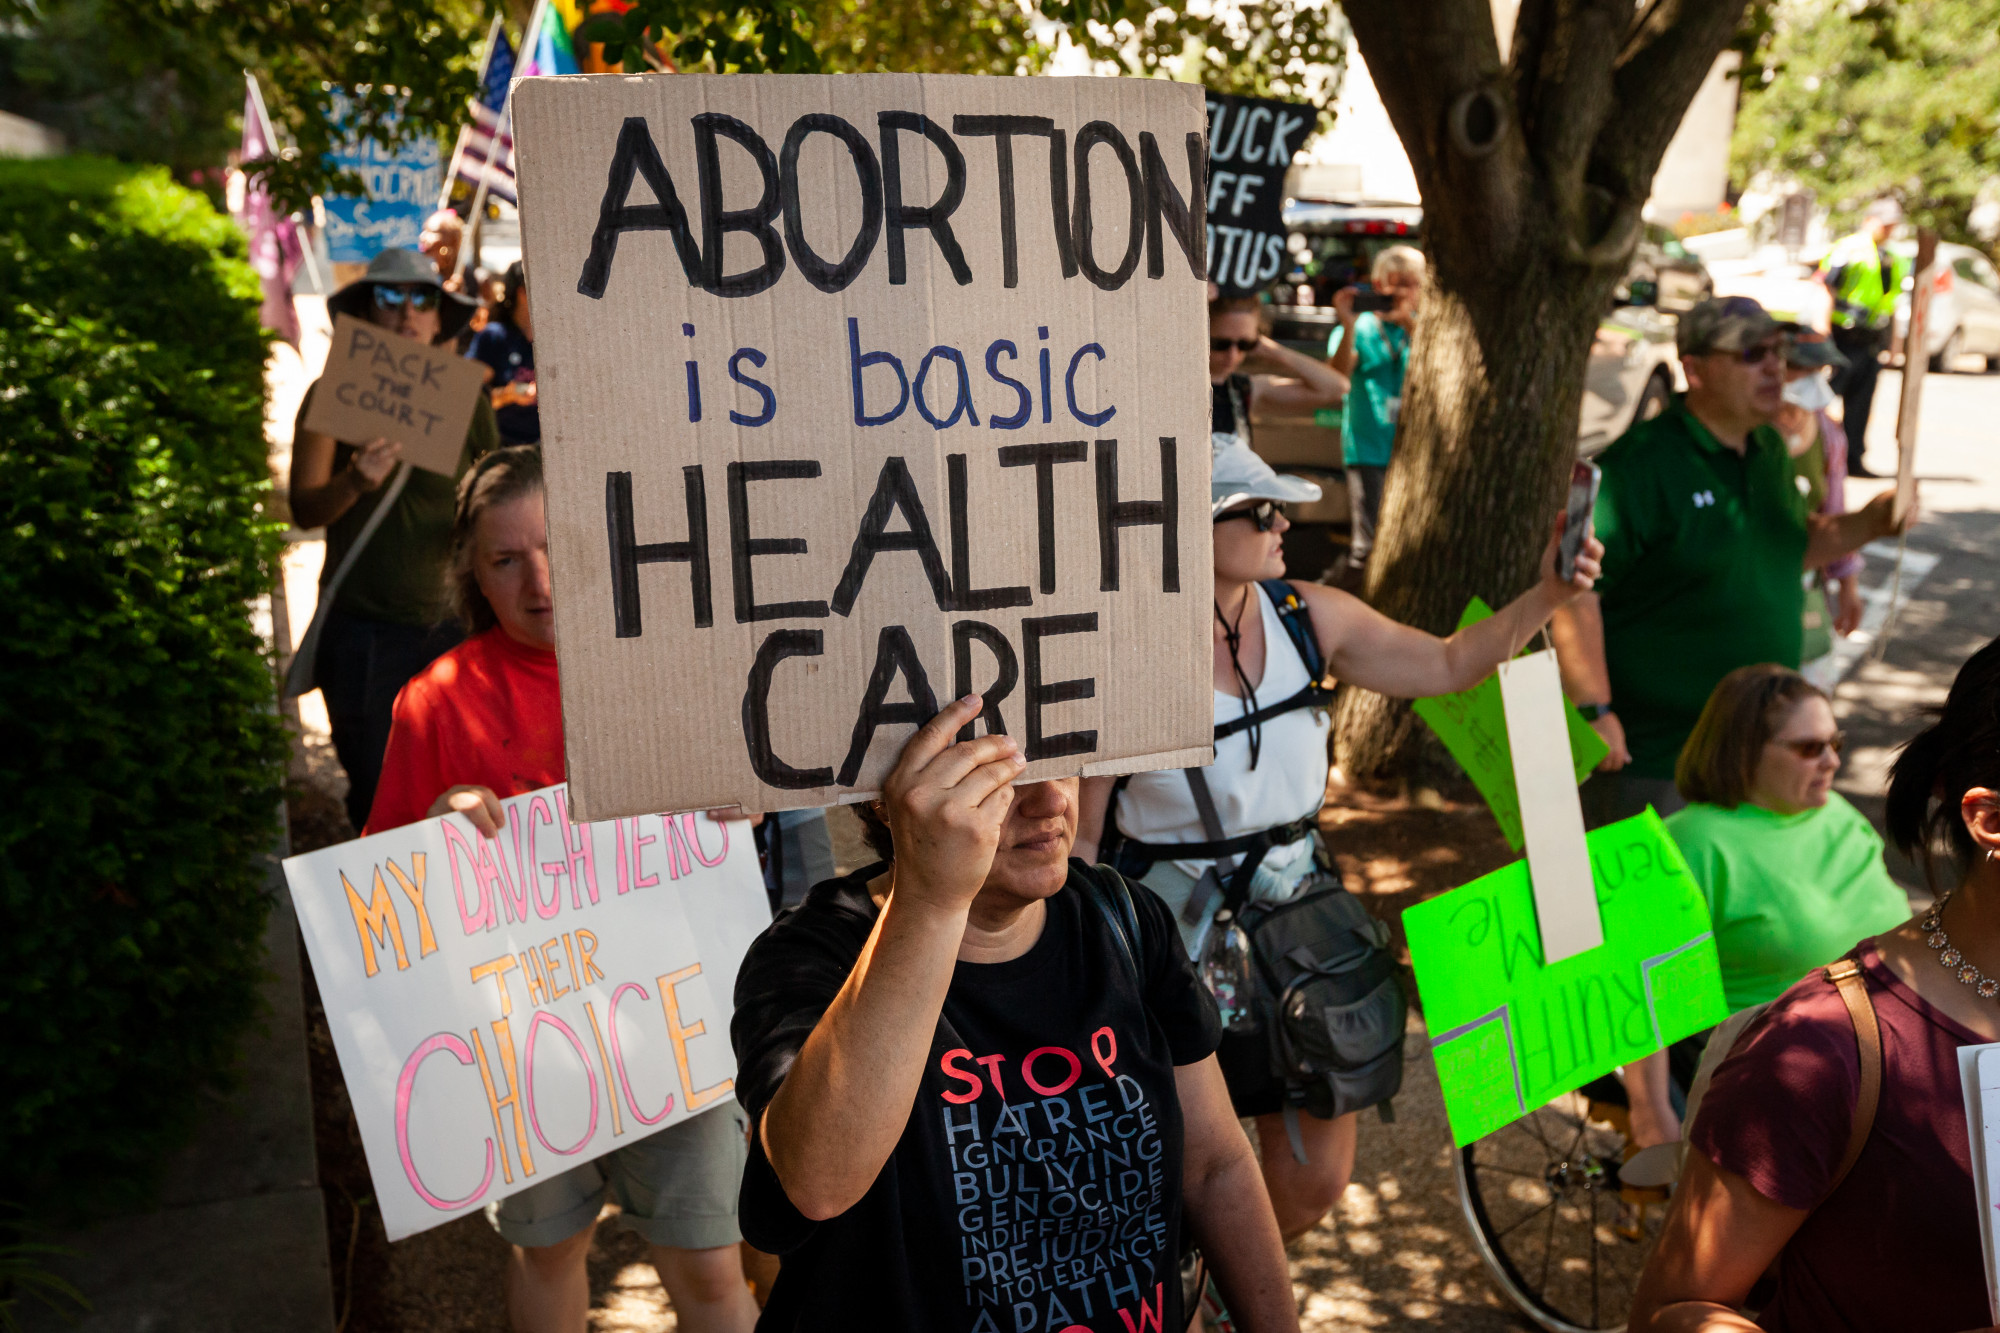 Abortusza miatt perelte Texas államot, most egy másik államba utazott abortuszra